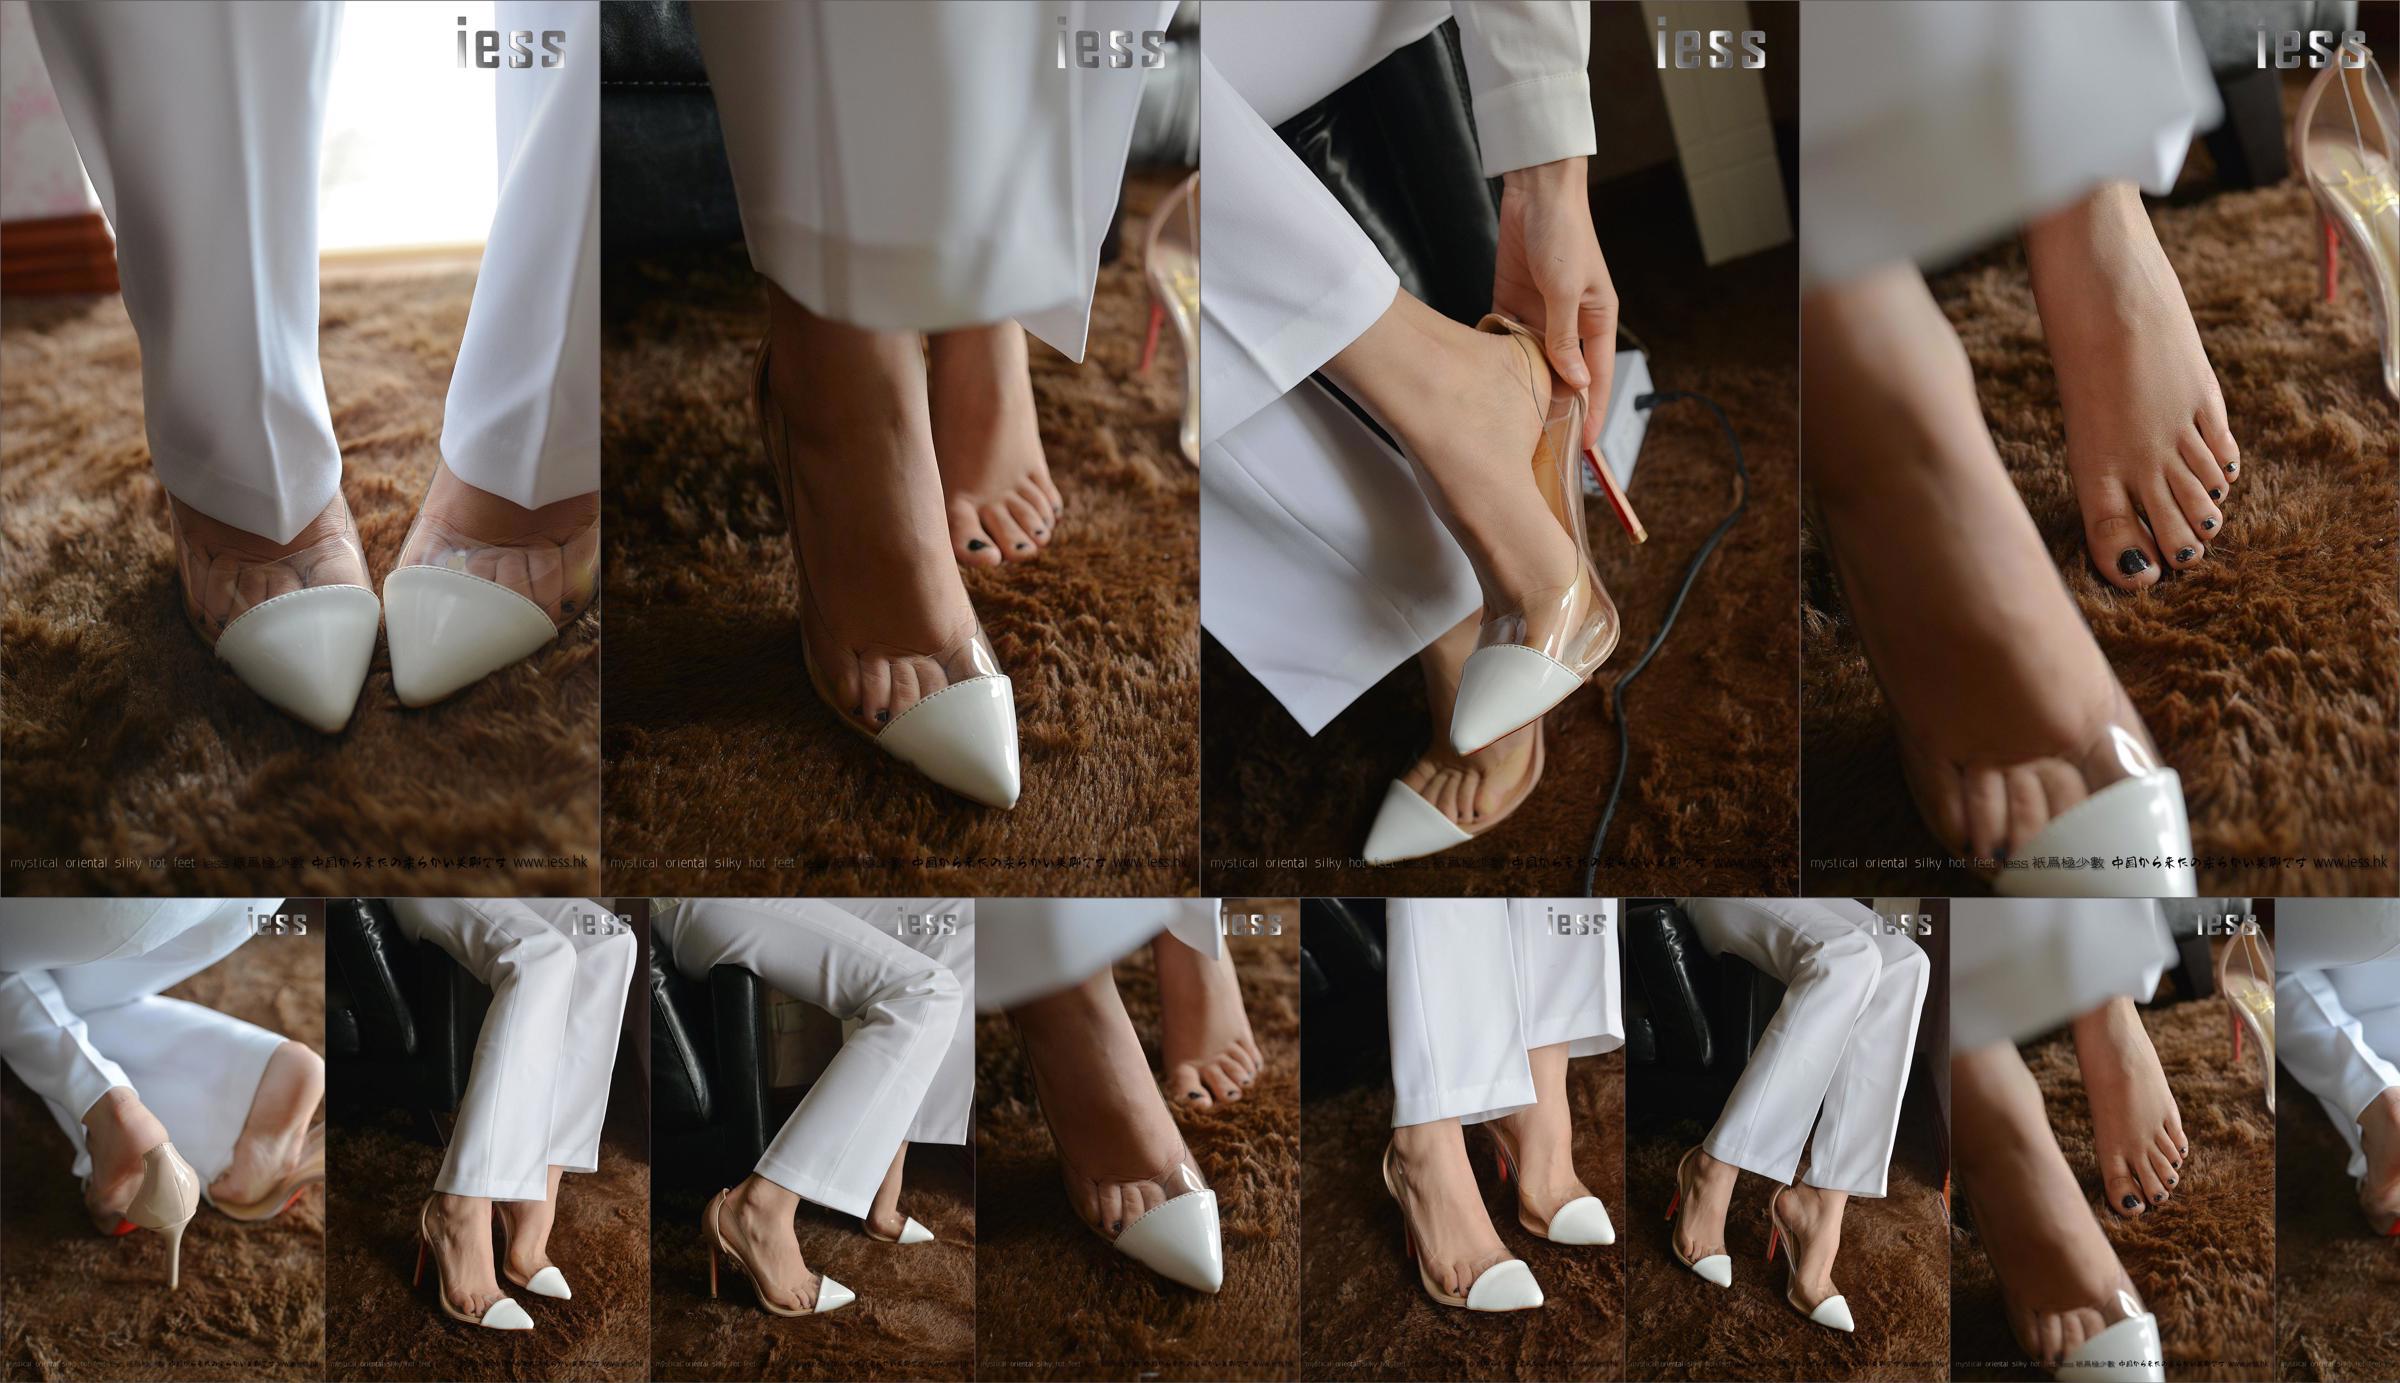 Seidiger Fuß Bento 058 Spannung "Collection-Bare Foot High Heels" [IESS Wei Si Fun Xiang] No.3905e5 Seite 6